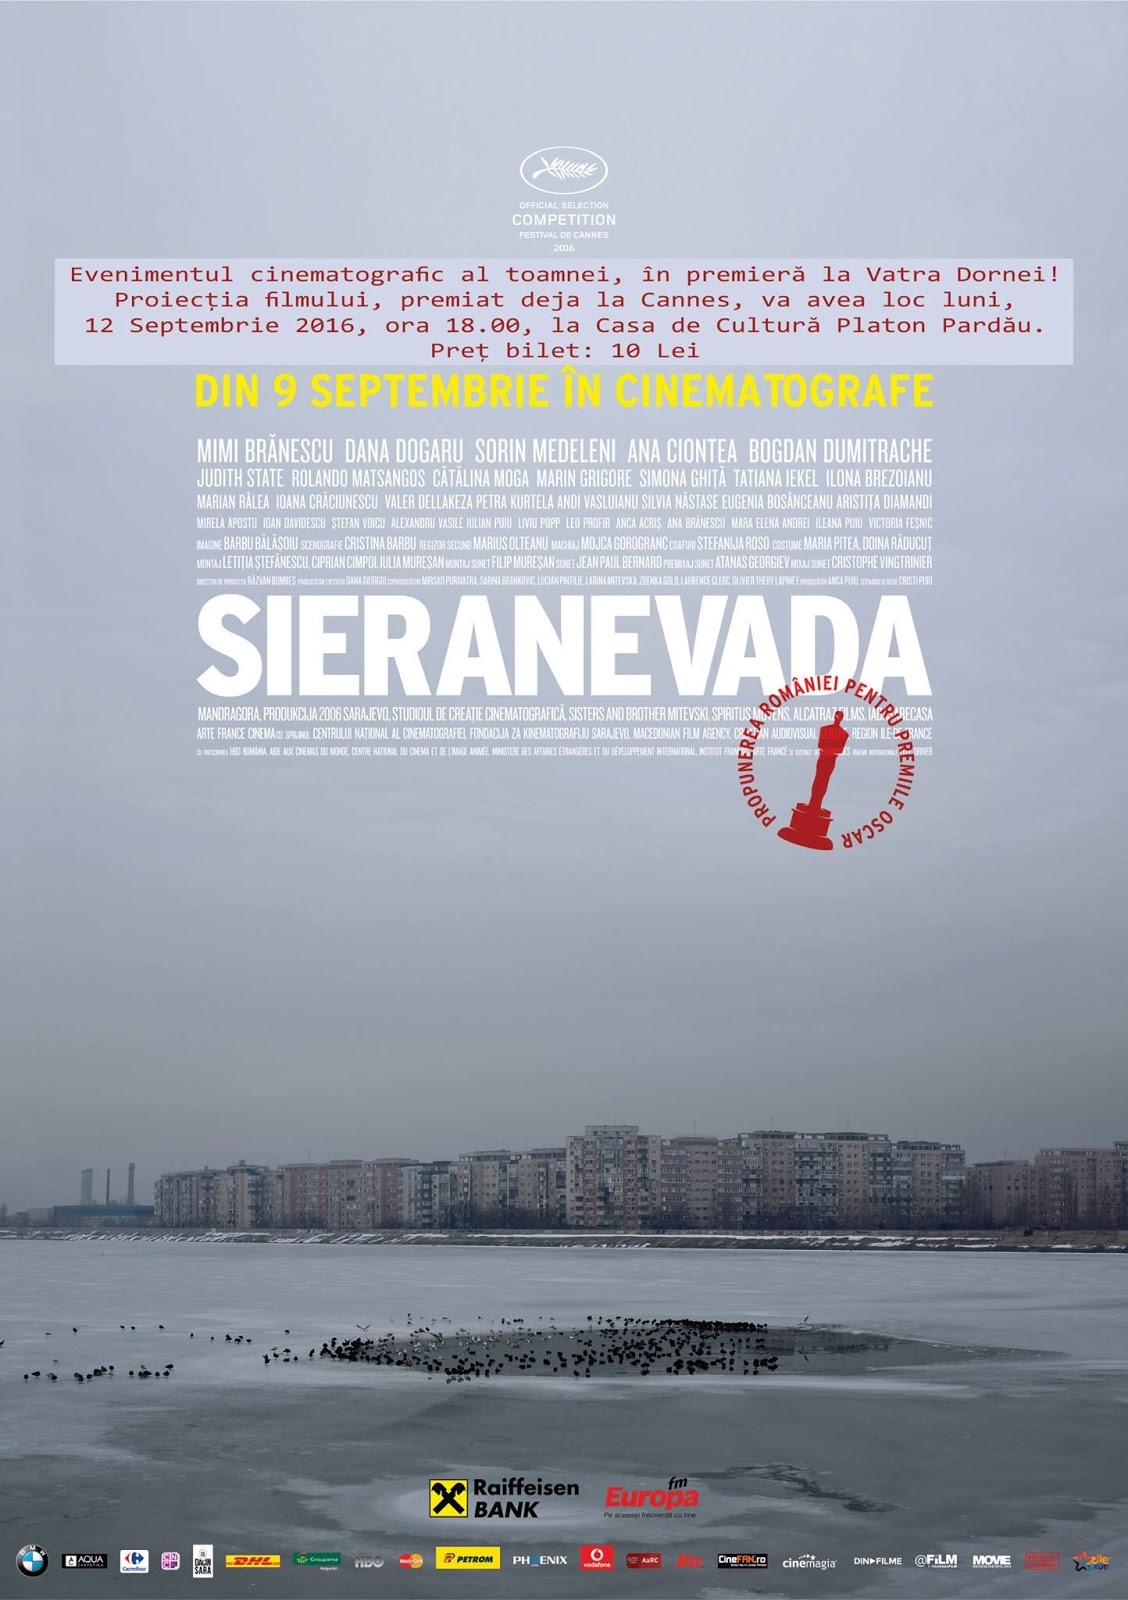 Premieră de gală "Sieranevada" - Casa de Cultură „Platon Pardău” Vatra Dornei, 12 septembrie 2016